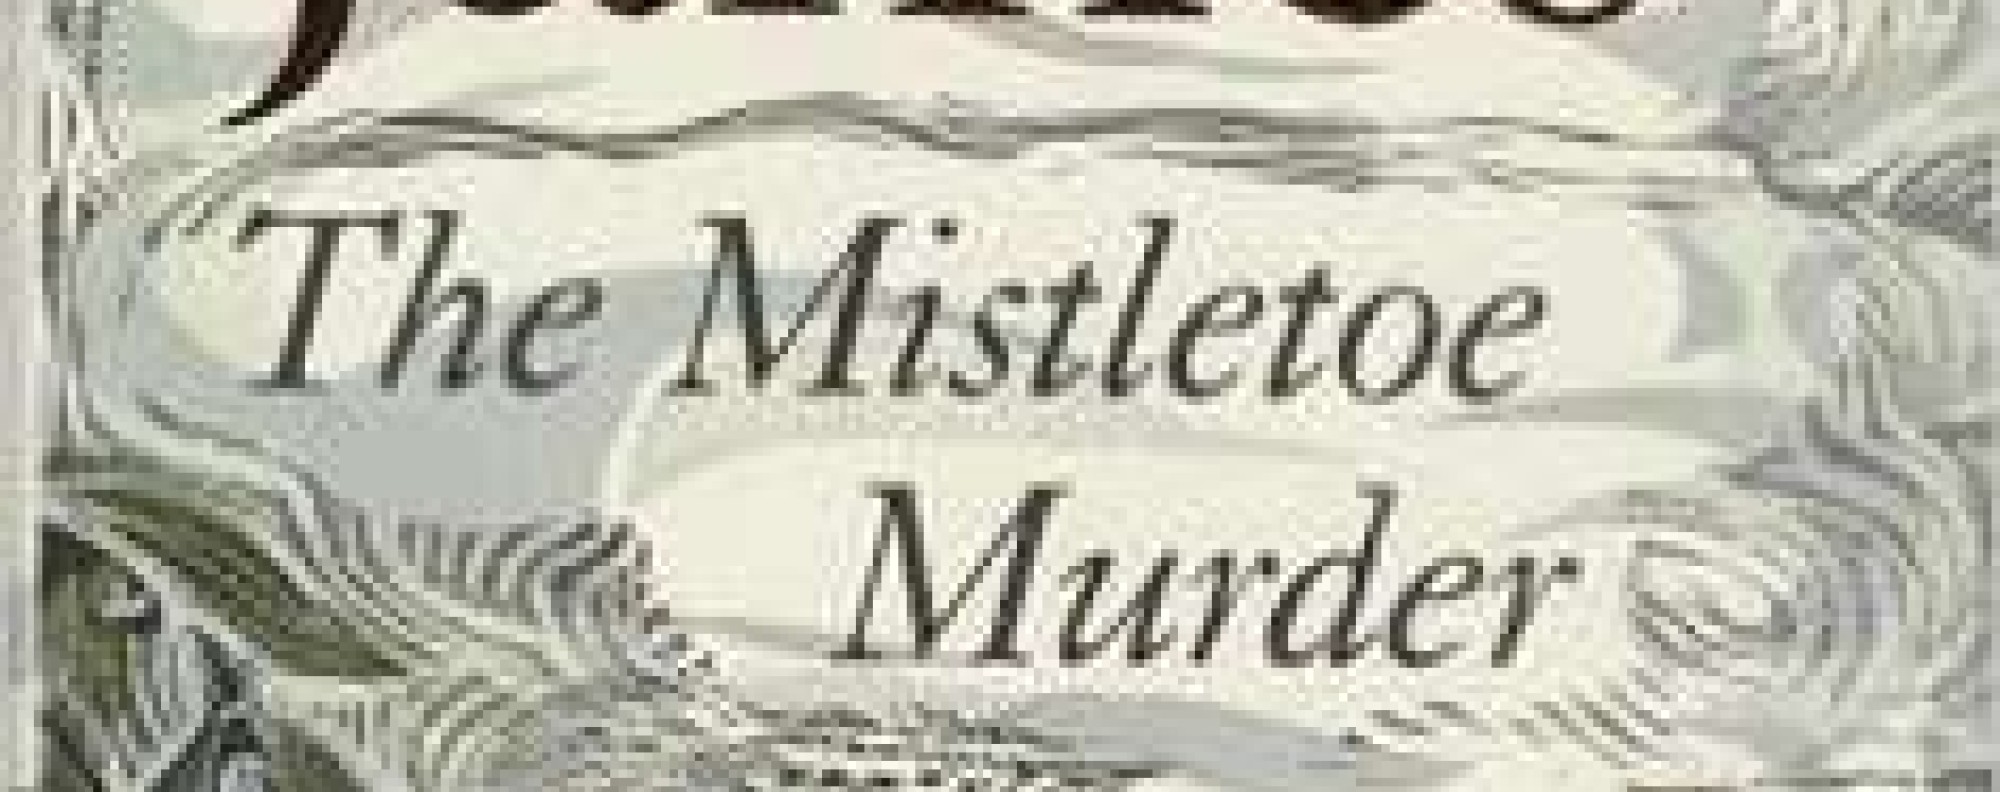 THE MISTLETOE MURDER